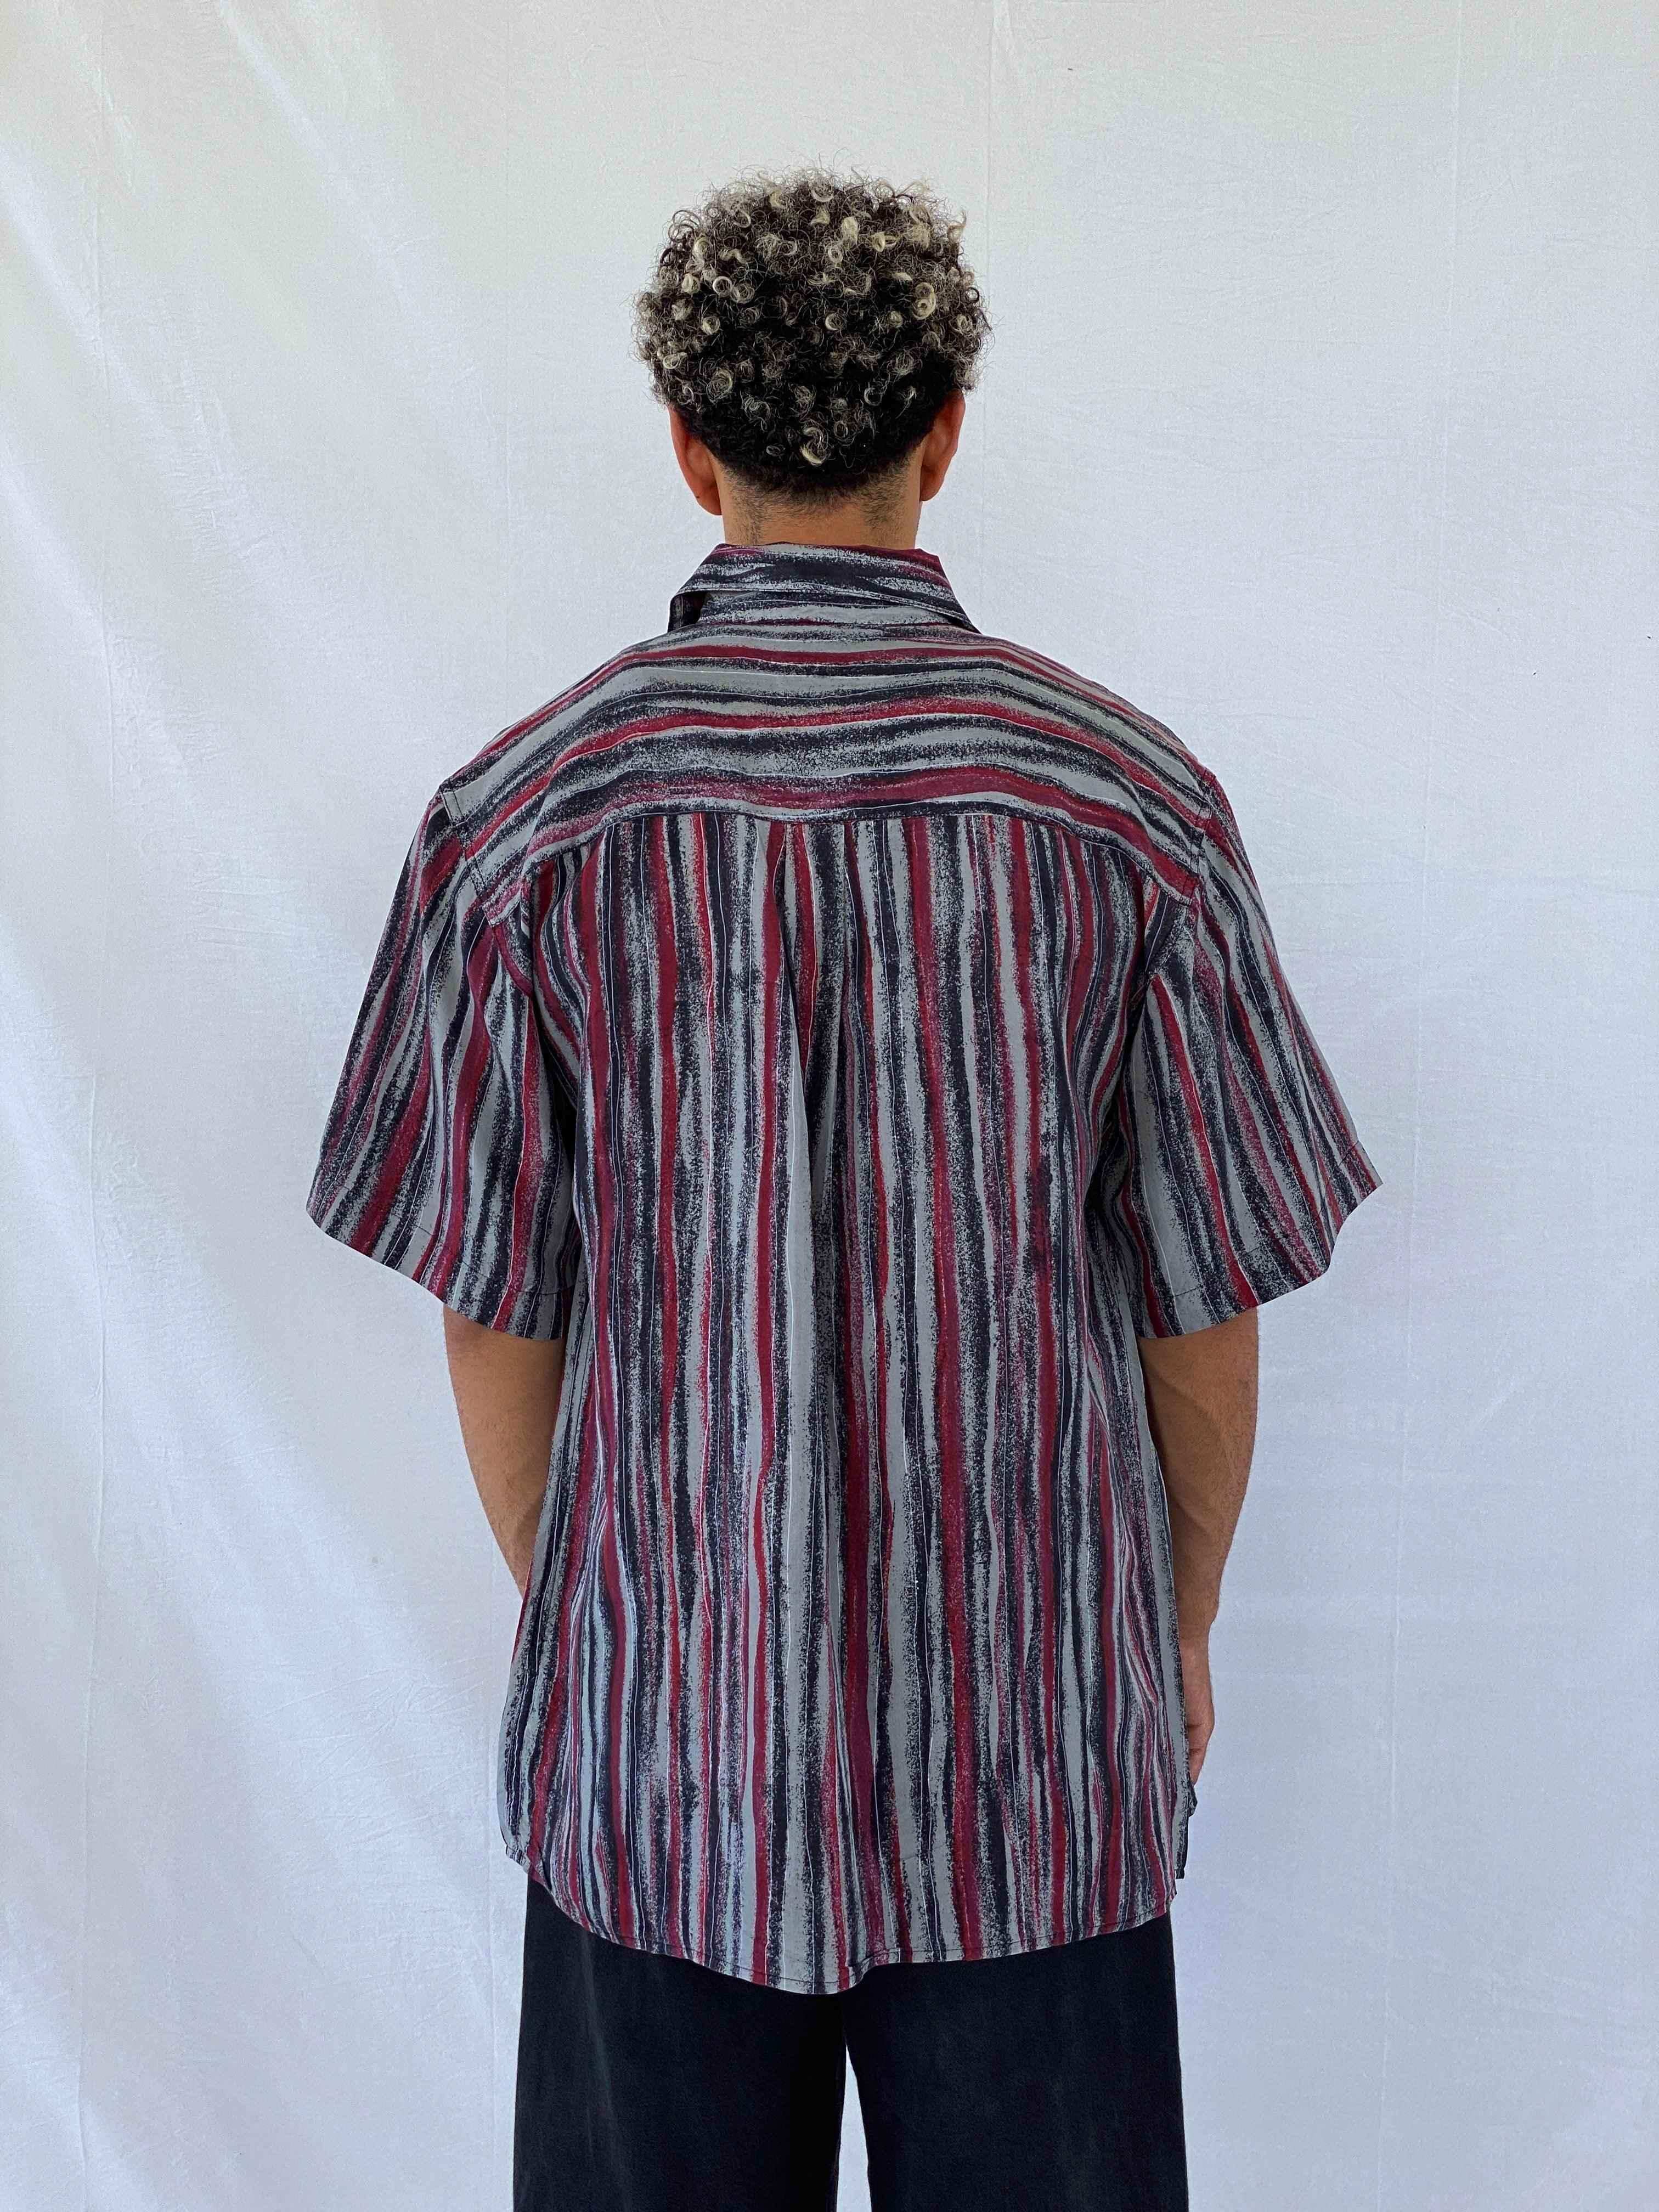 Vintage Carletti Printed Shirt - Balagan Vintage Half Sleeve Shirt 00s, 90s, Abdullah, half sleeve shirt, men, NEW IN